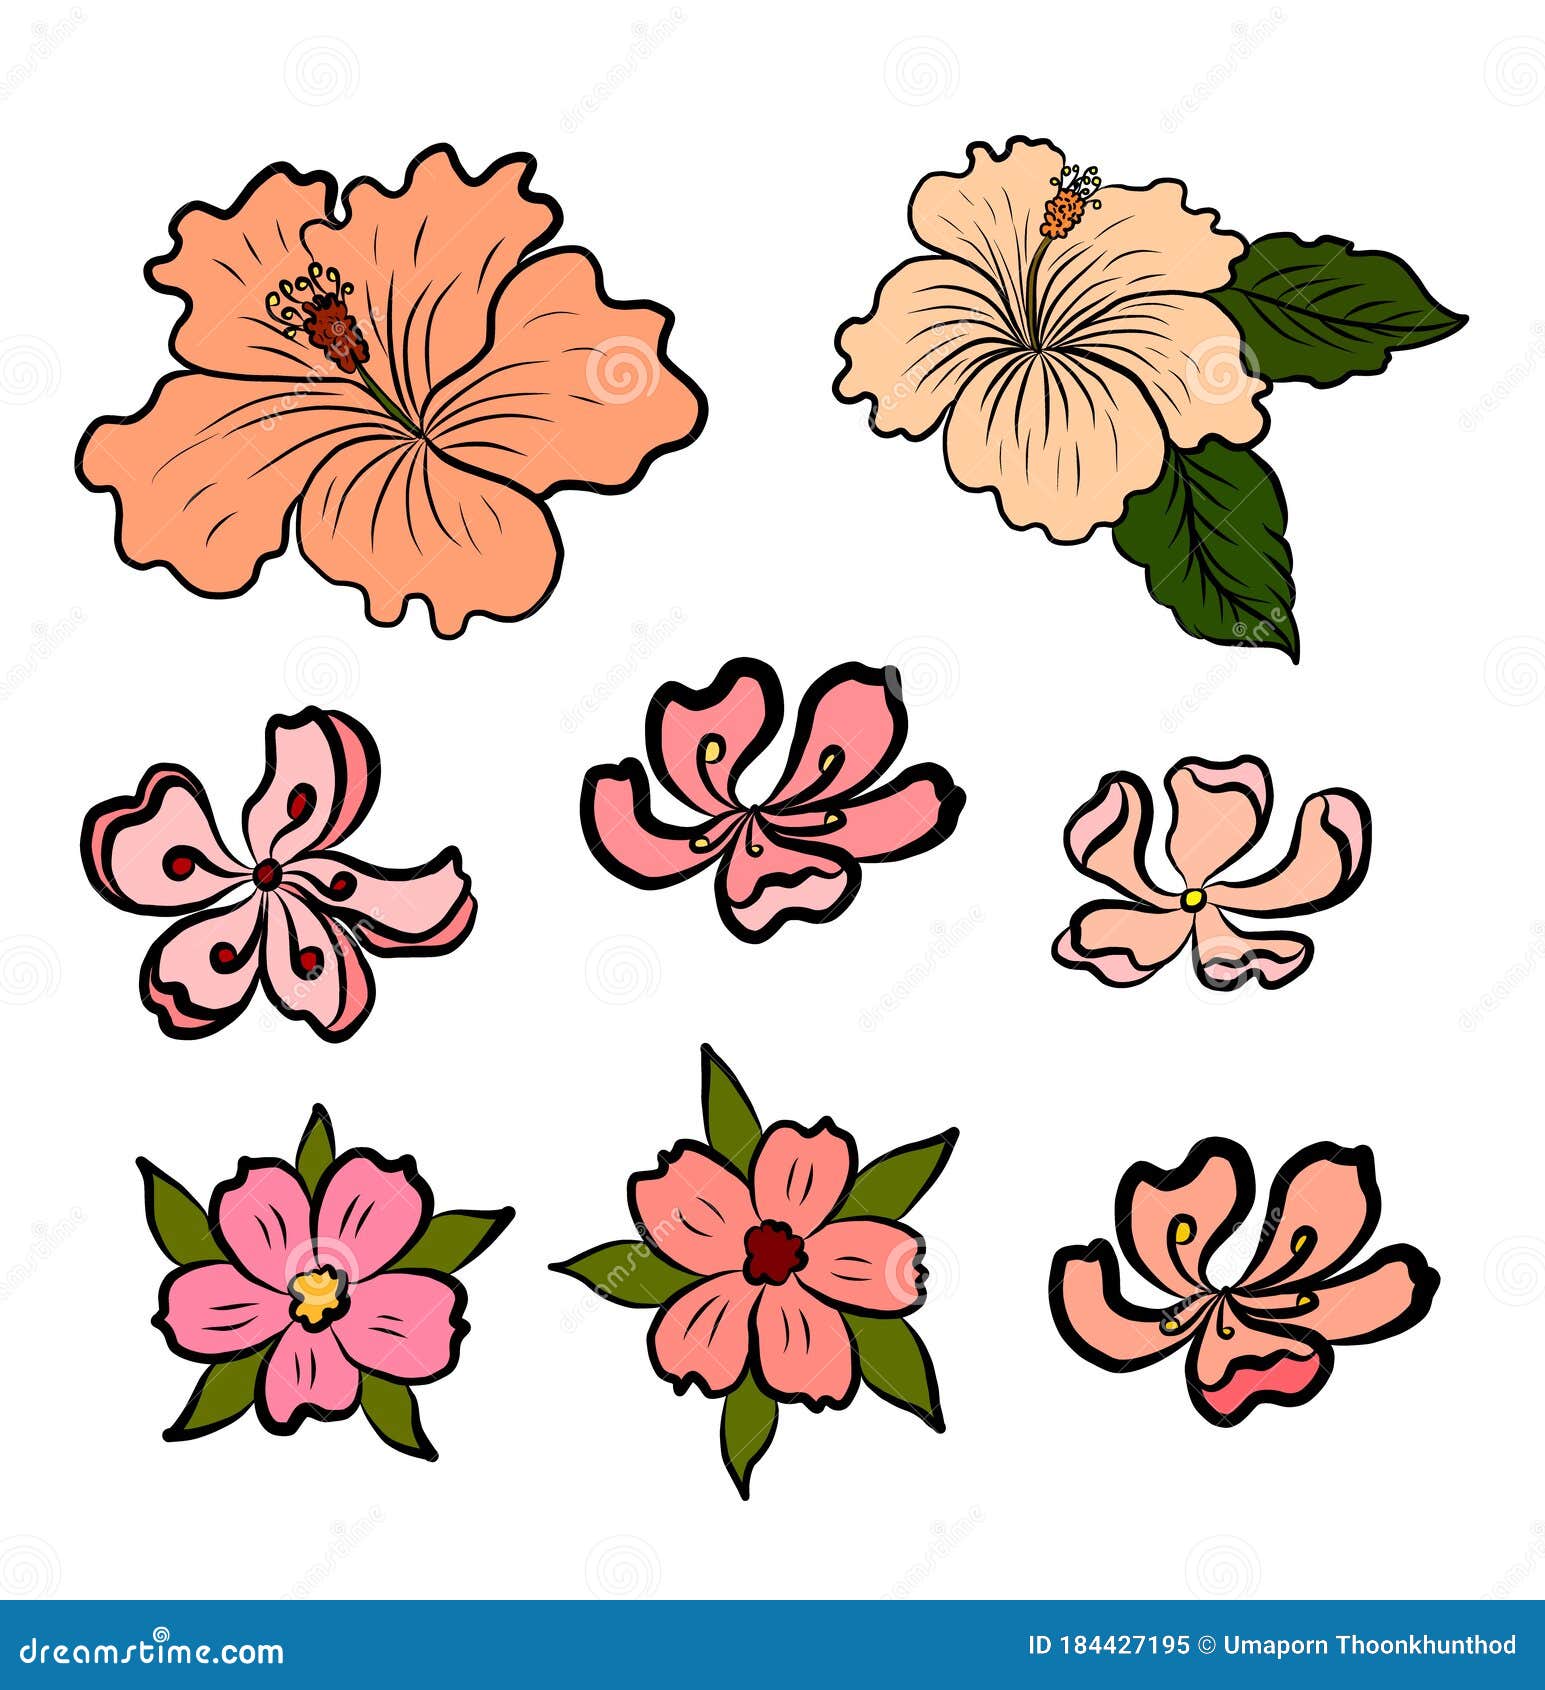 flower tattoo design for girl  Clip Art Library